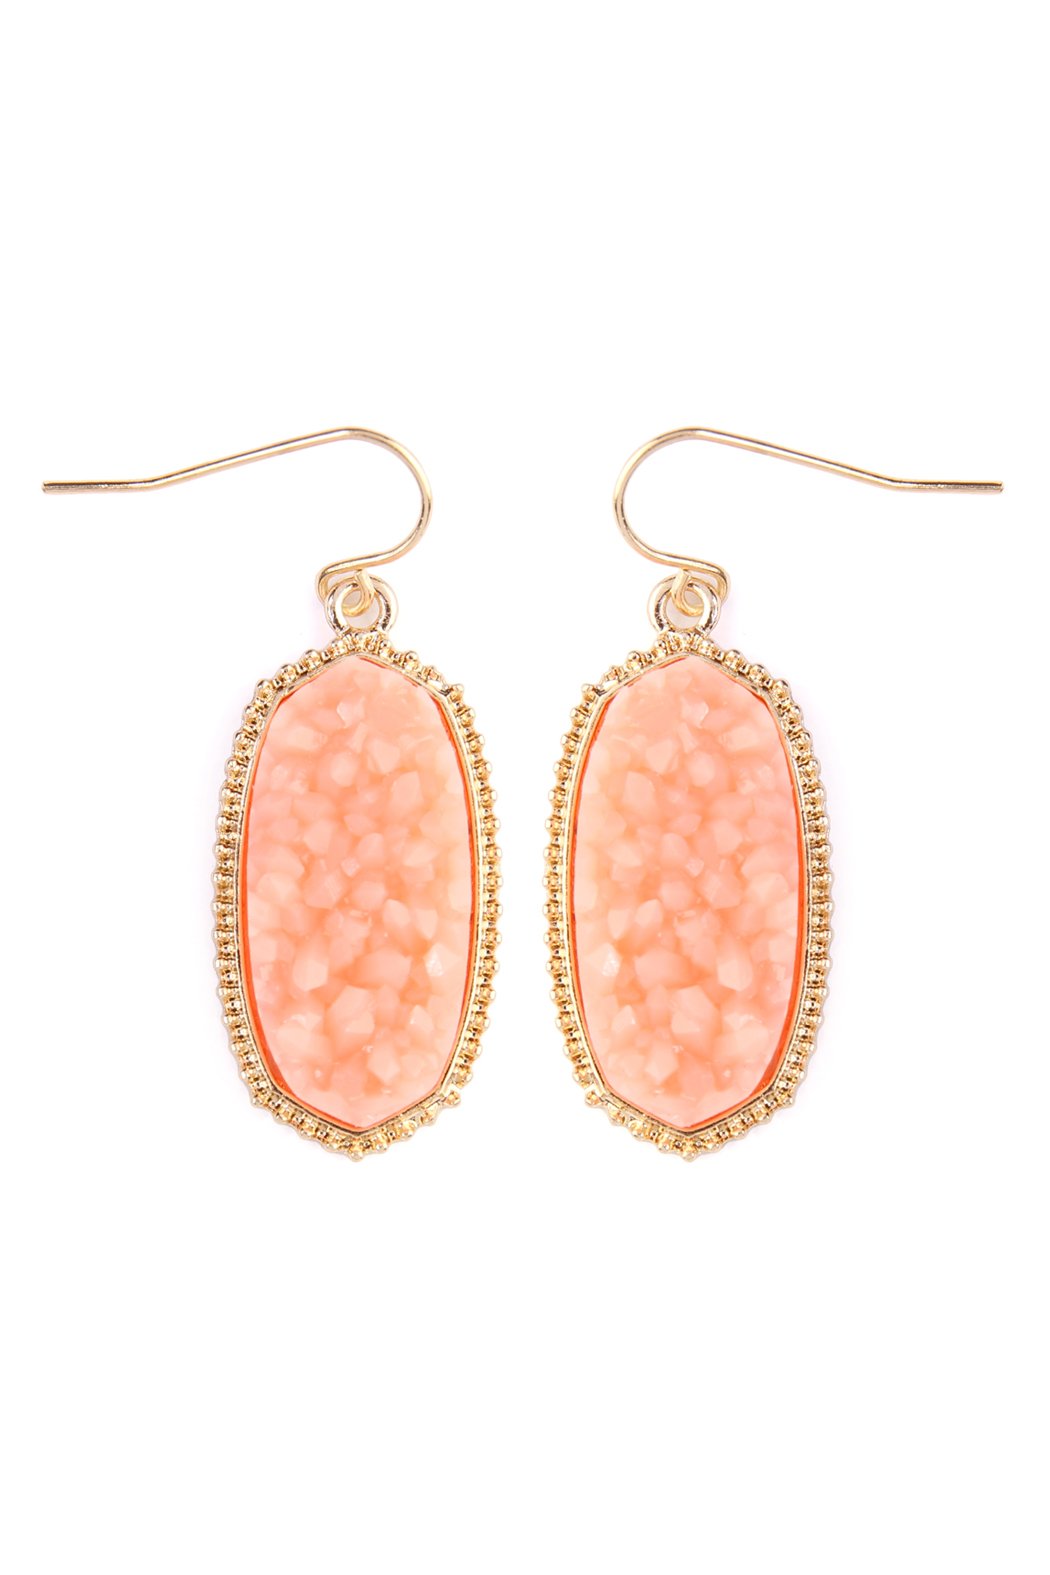 Small Druzy Drop Earrings- Peach